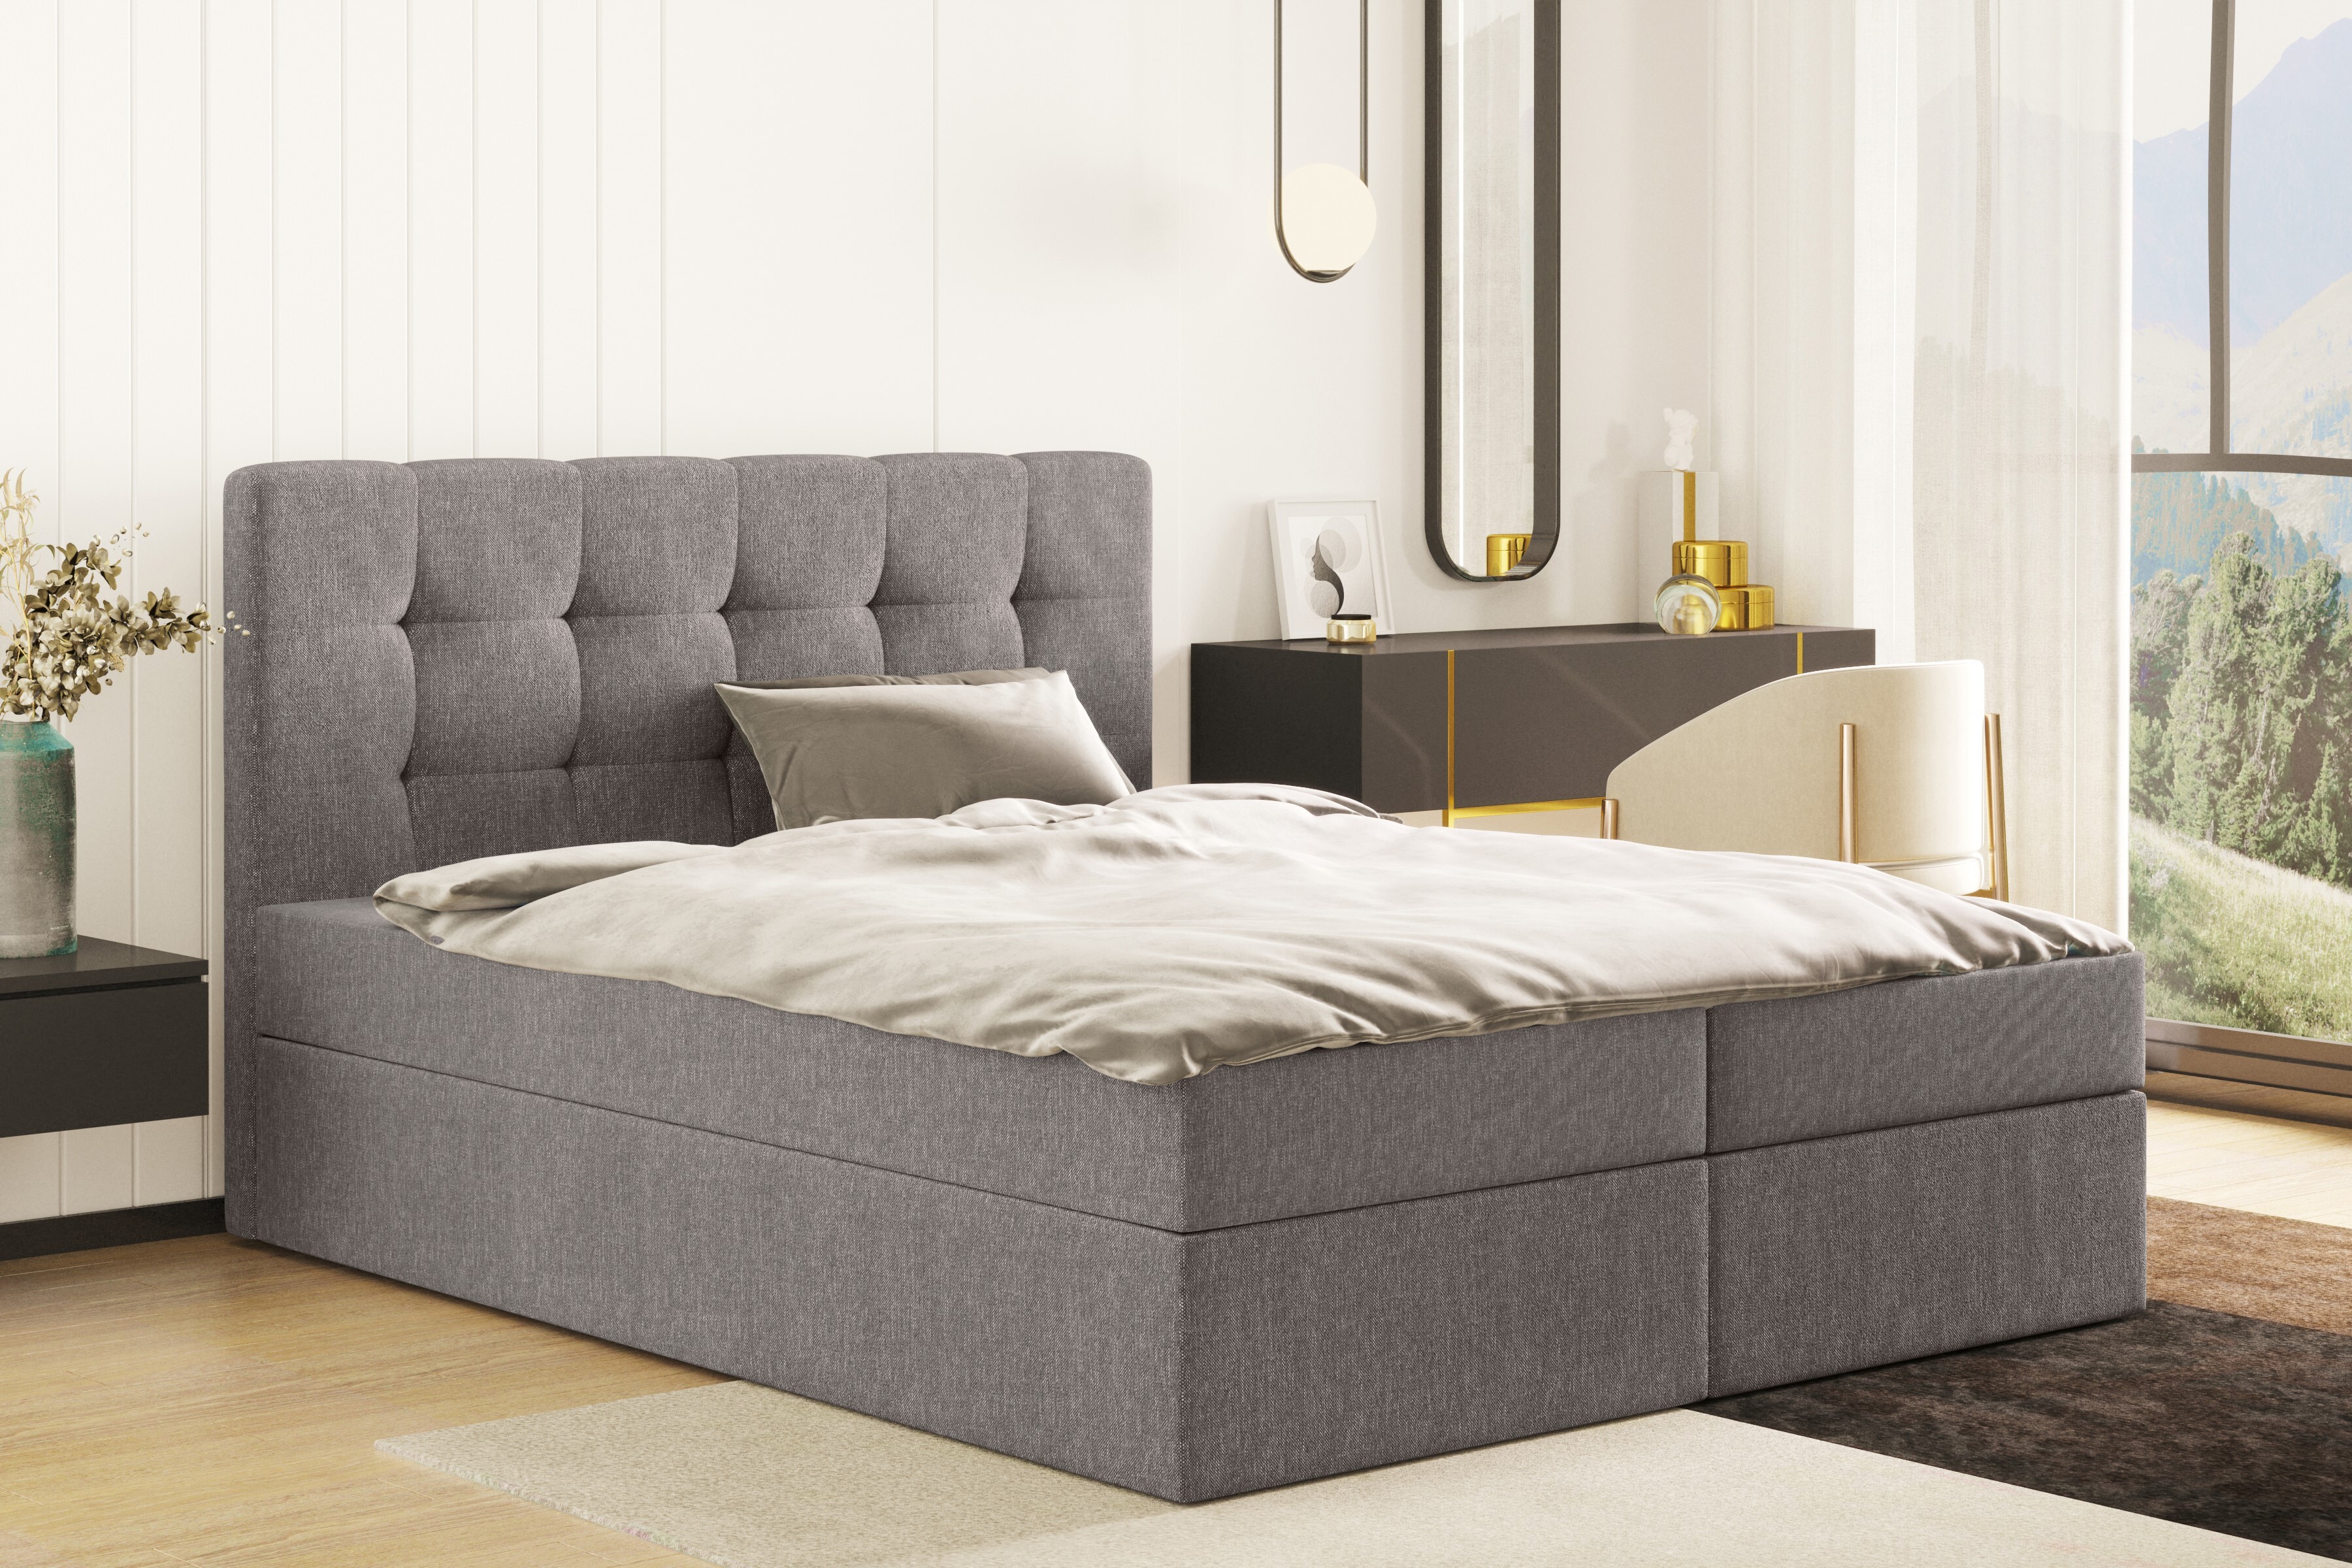 Skriňová posteľ s matracom a podstavcom pod posteľ, LUDANO posteľ na spanie 180 cm x 200 cm látka Cosmic grey